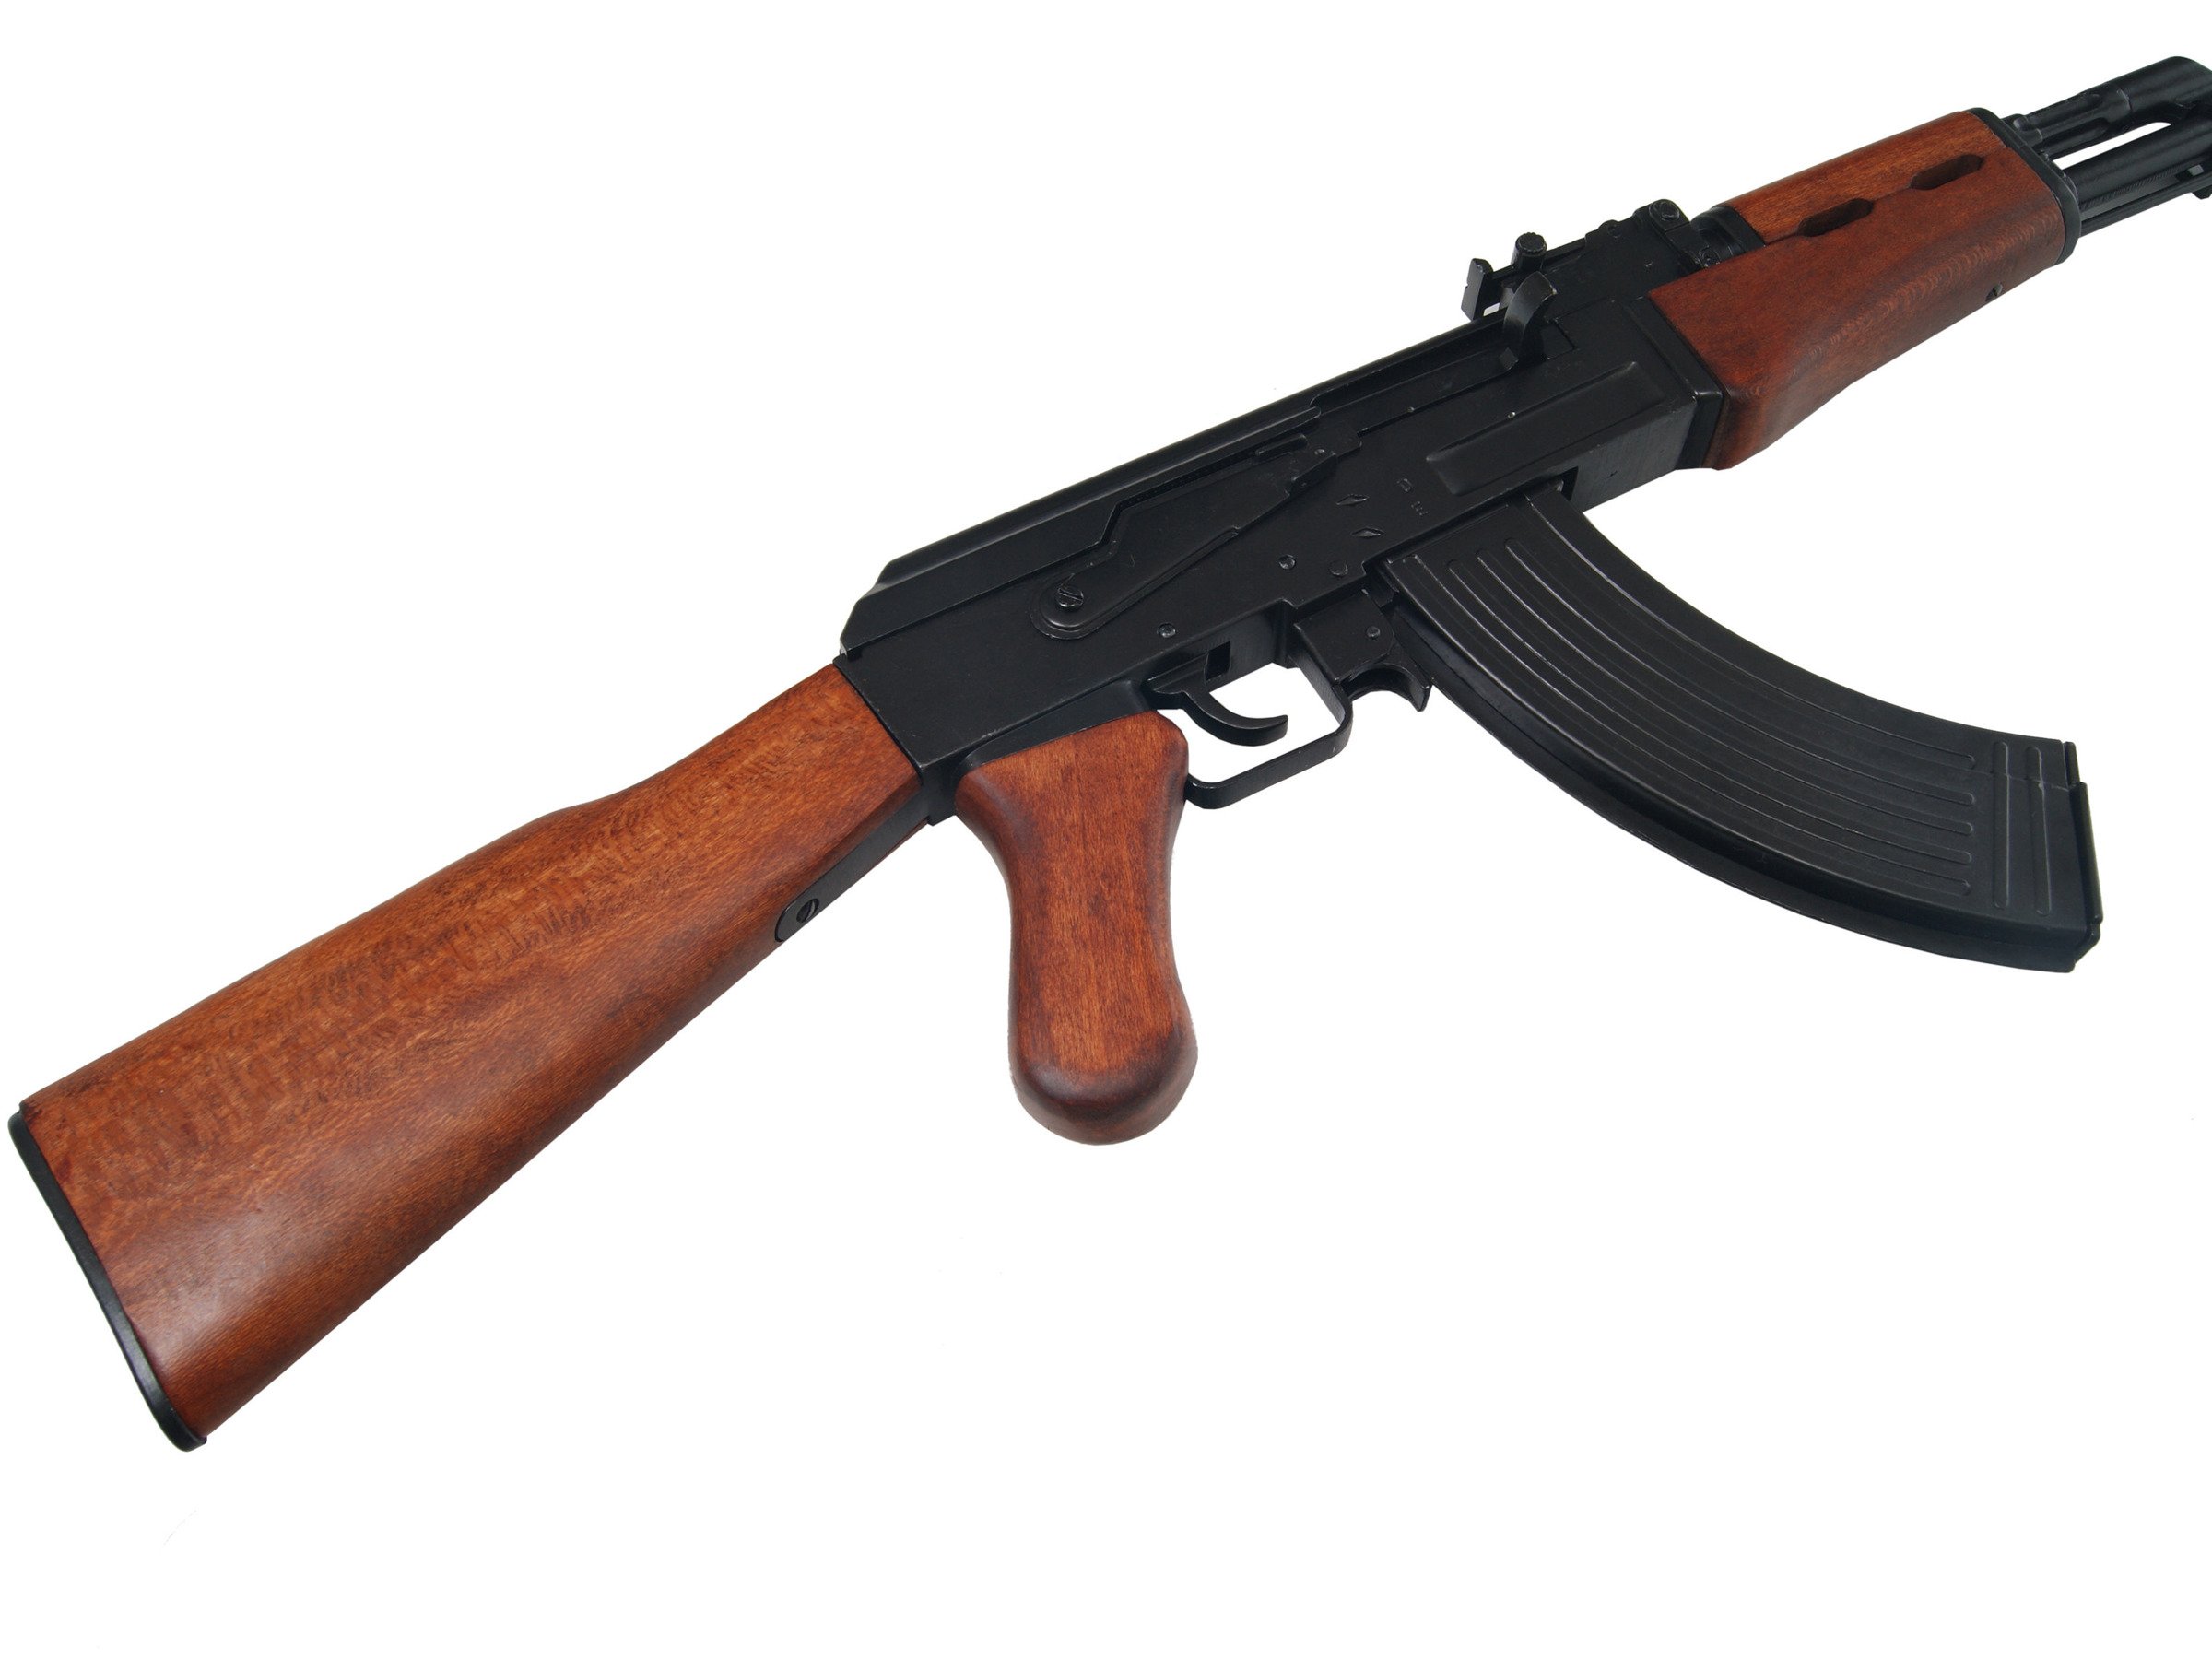 AK-47 assault rifle - wooden stock - model gun.